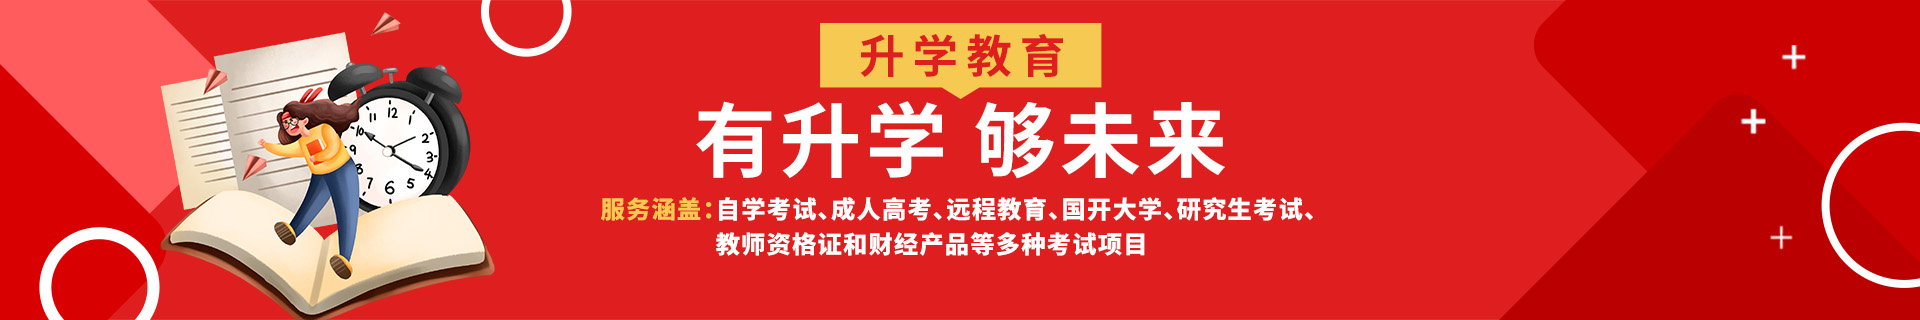 上海黄浦区升学教育机构